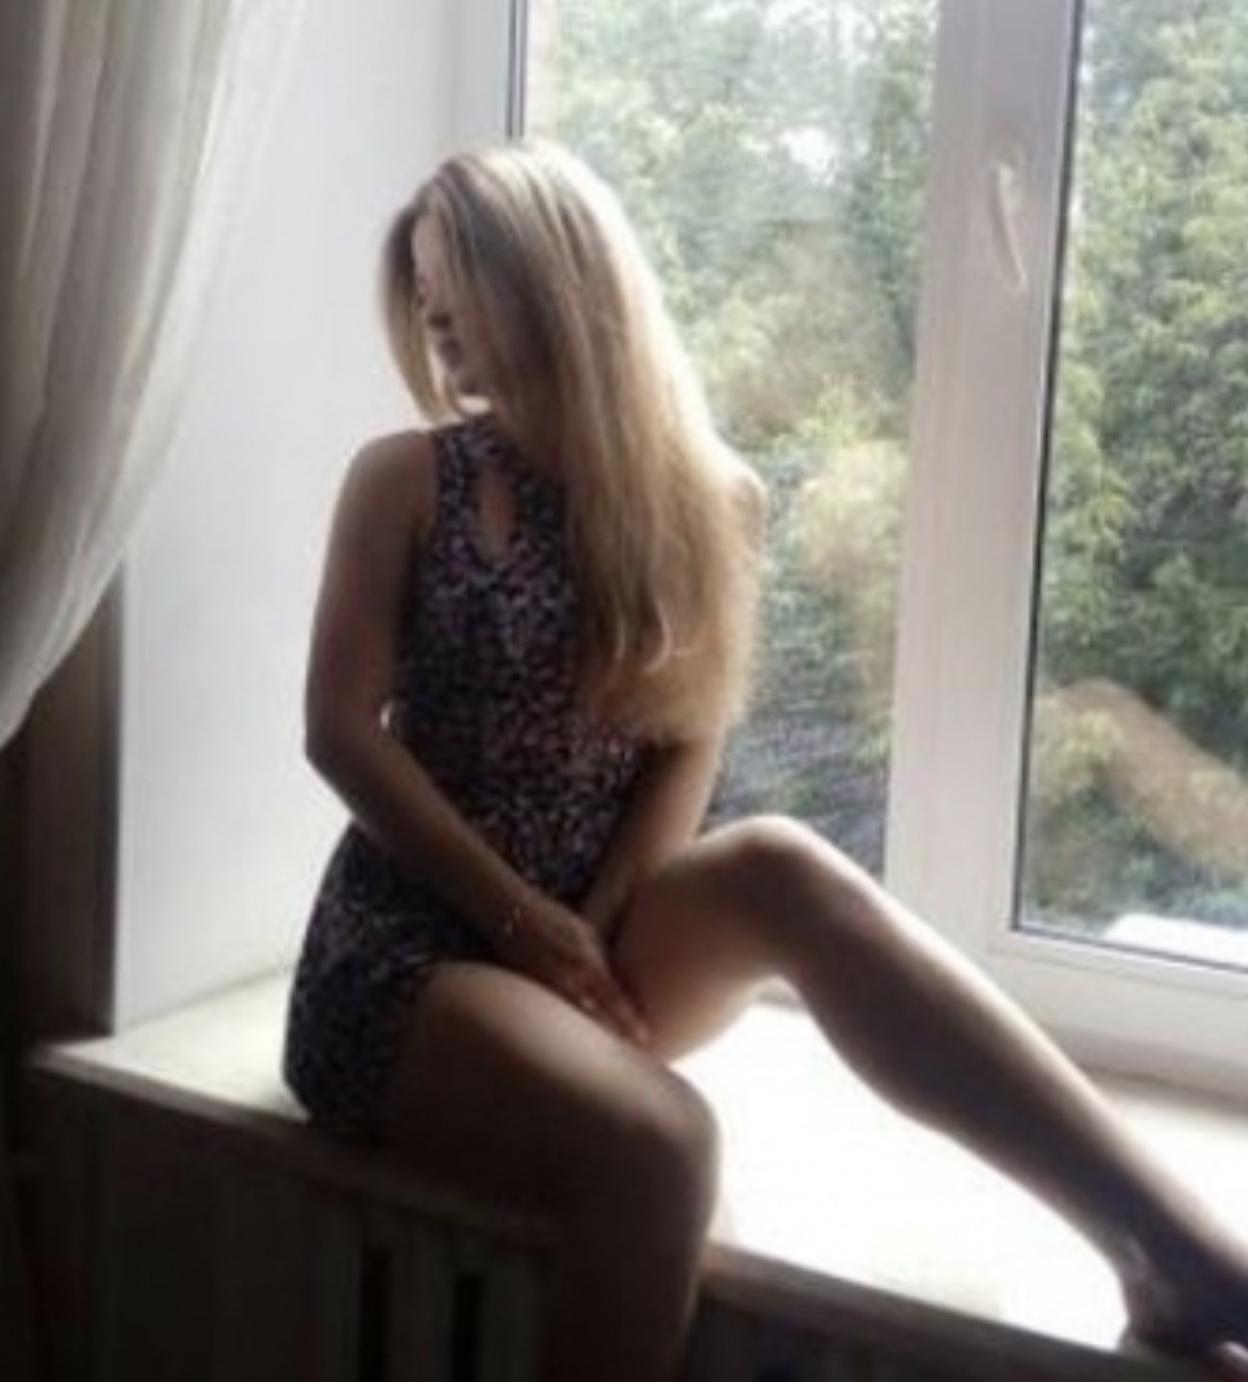 Проститутка Ksyusha, фото 1, тел: 0671573475. Desnianskyi area - Киев